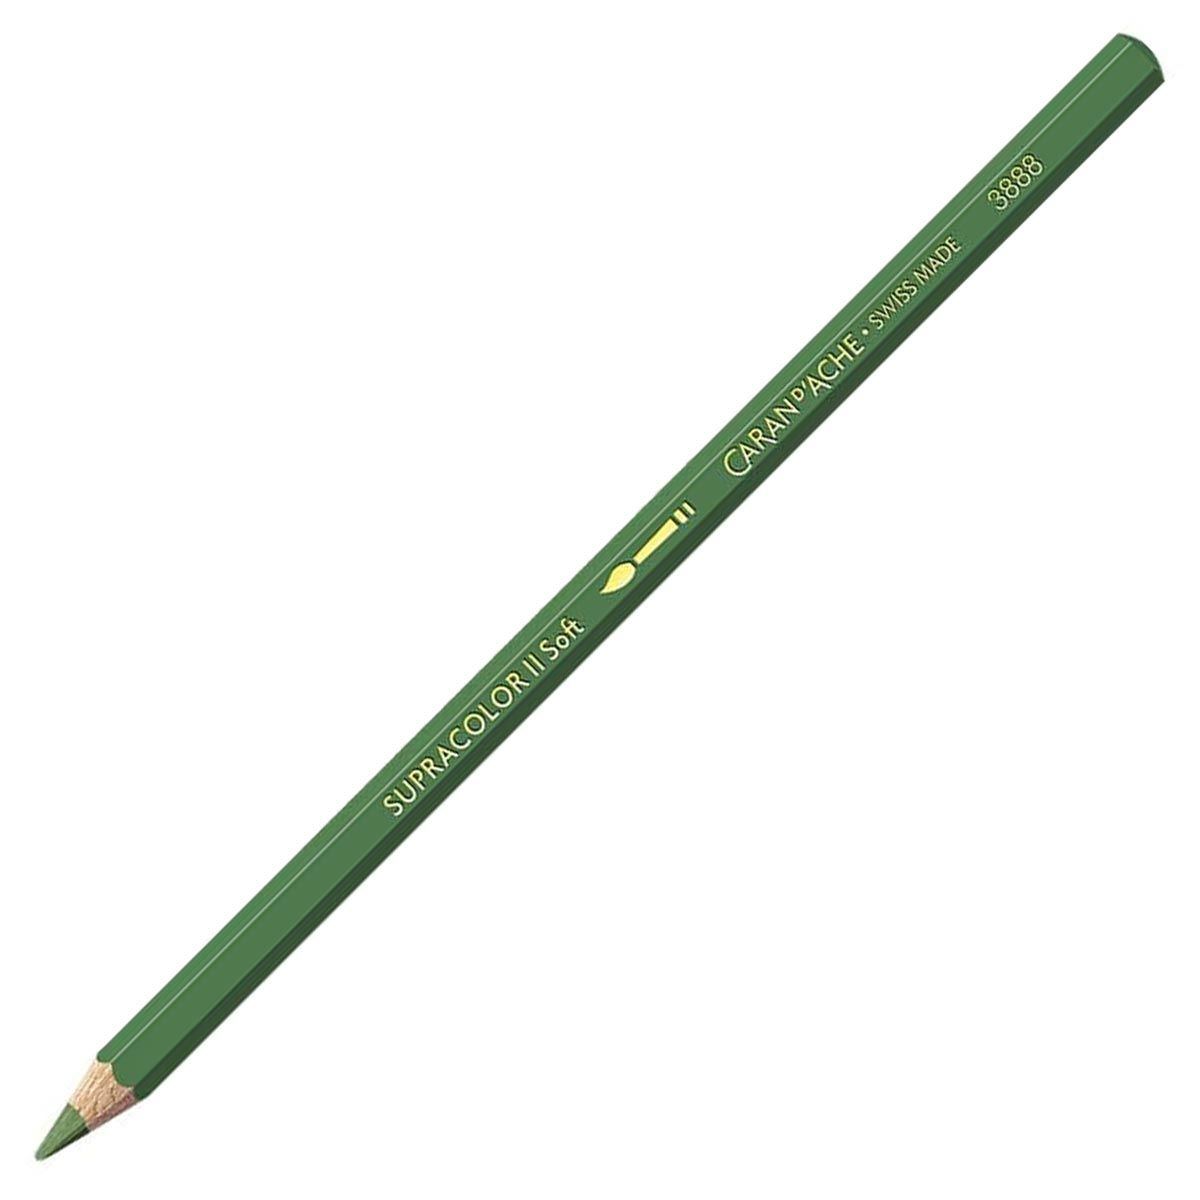 Caran d'Ache Supracolor ll Soft Aquarelle Pencil Moss Green 225